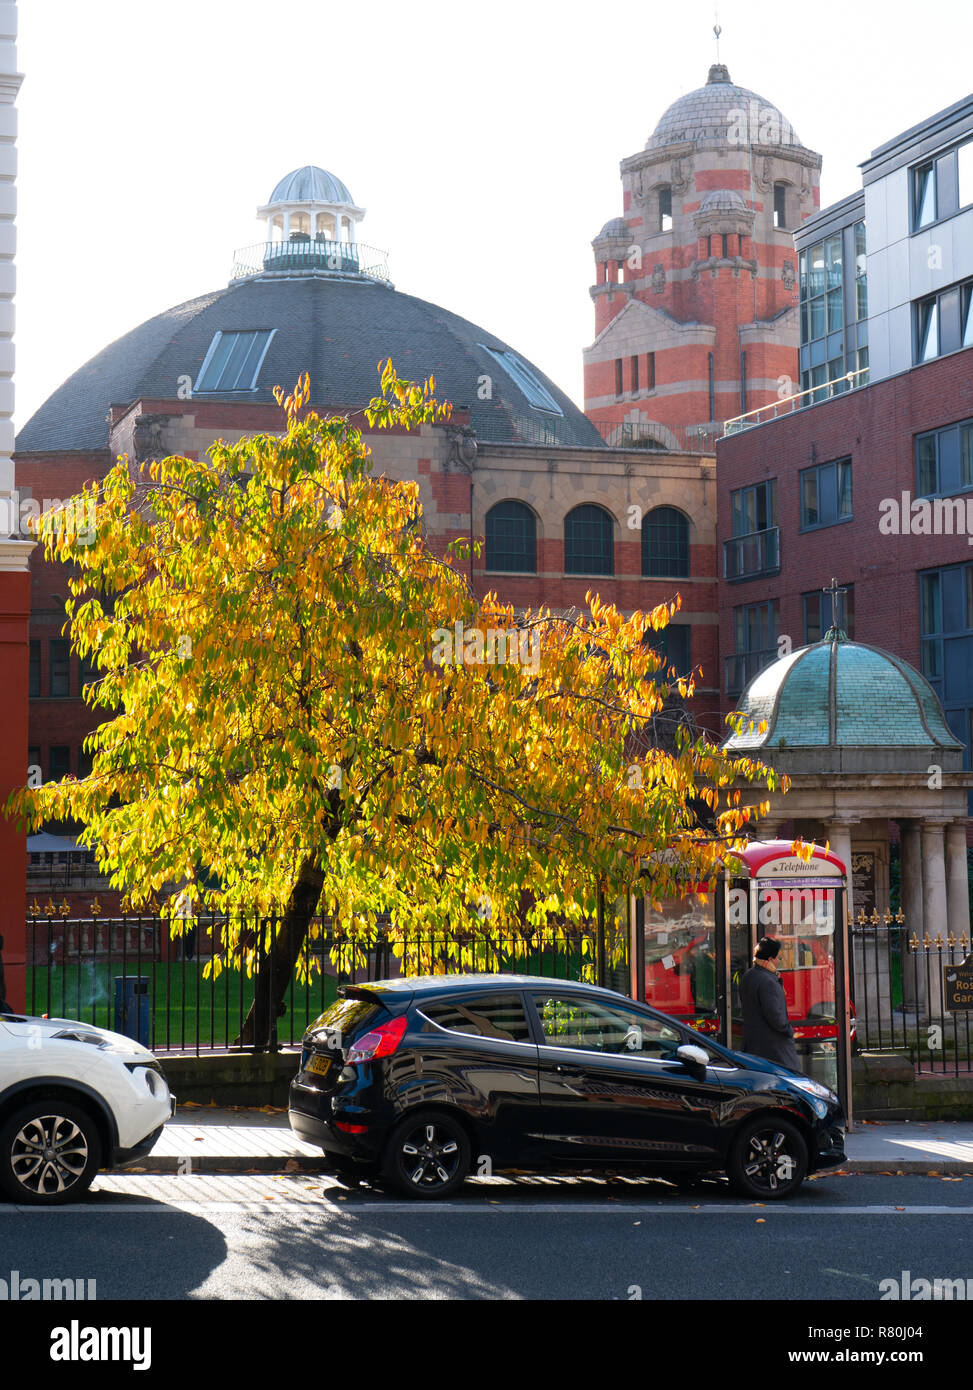 Mount Pleasant, Liverpool, con le cupole del salone centrale (ora Grand Central Hotel/bar) di Renshaw St in background. Immagine presa nel novembre 2018. Foto Stock